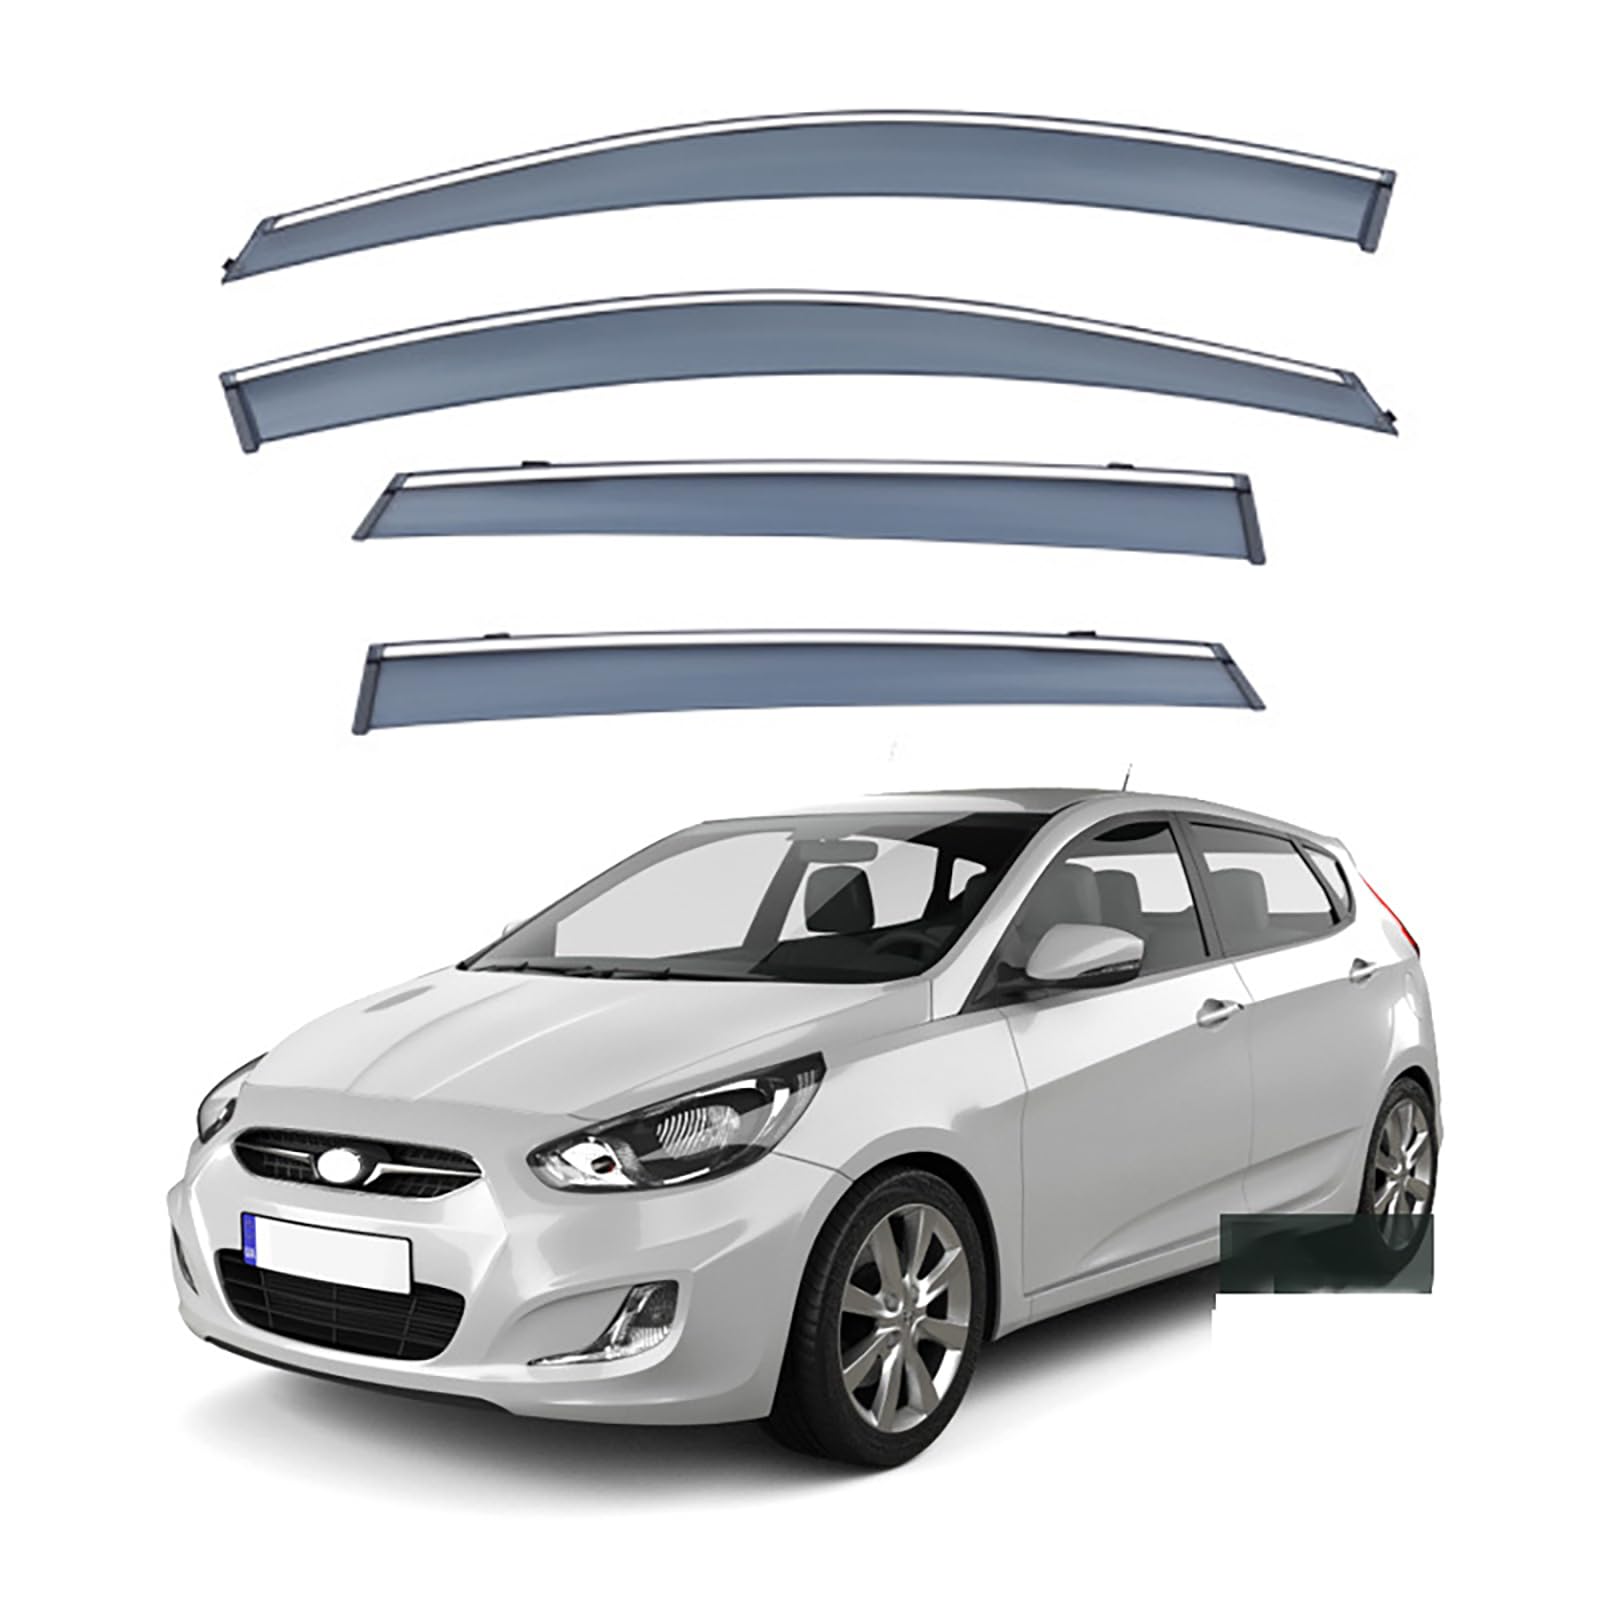 Auto-Windabweiser für Hyundai Accent Schrägheck 2011–2016, Autofenster-Regenschutz, Abwehrabweiser Sonnenblenden Zubehör von LUGIWN